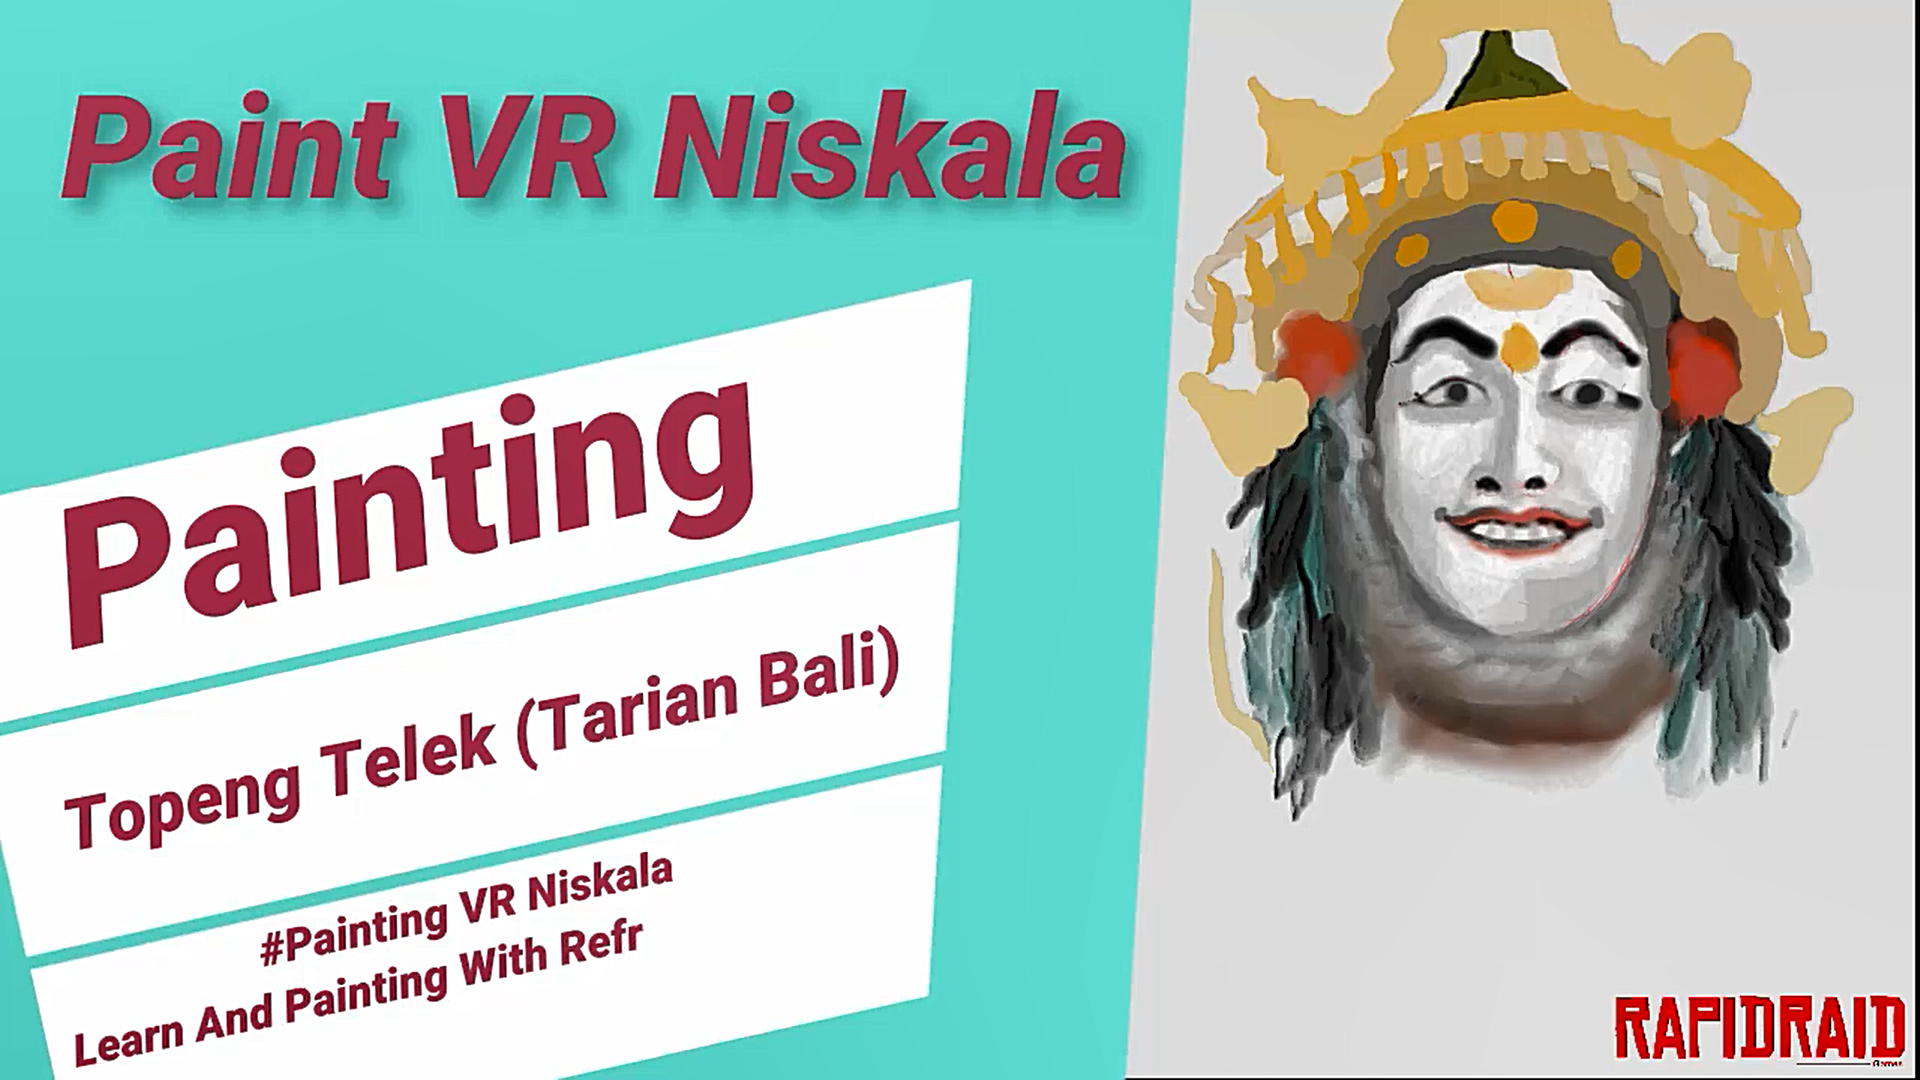 Paint VR Niskala